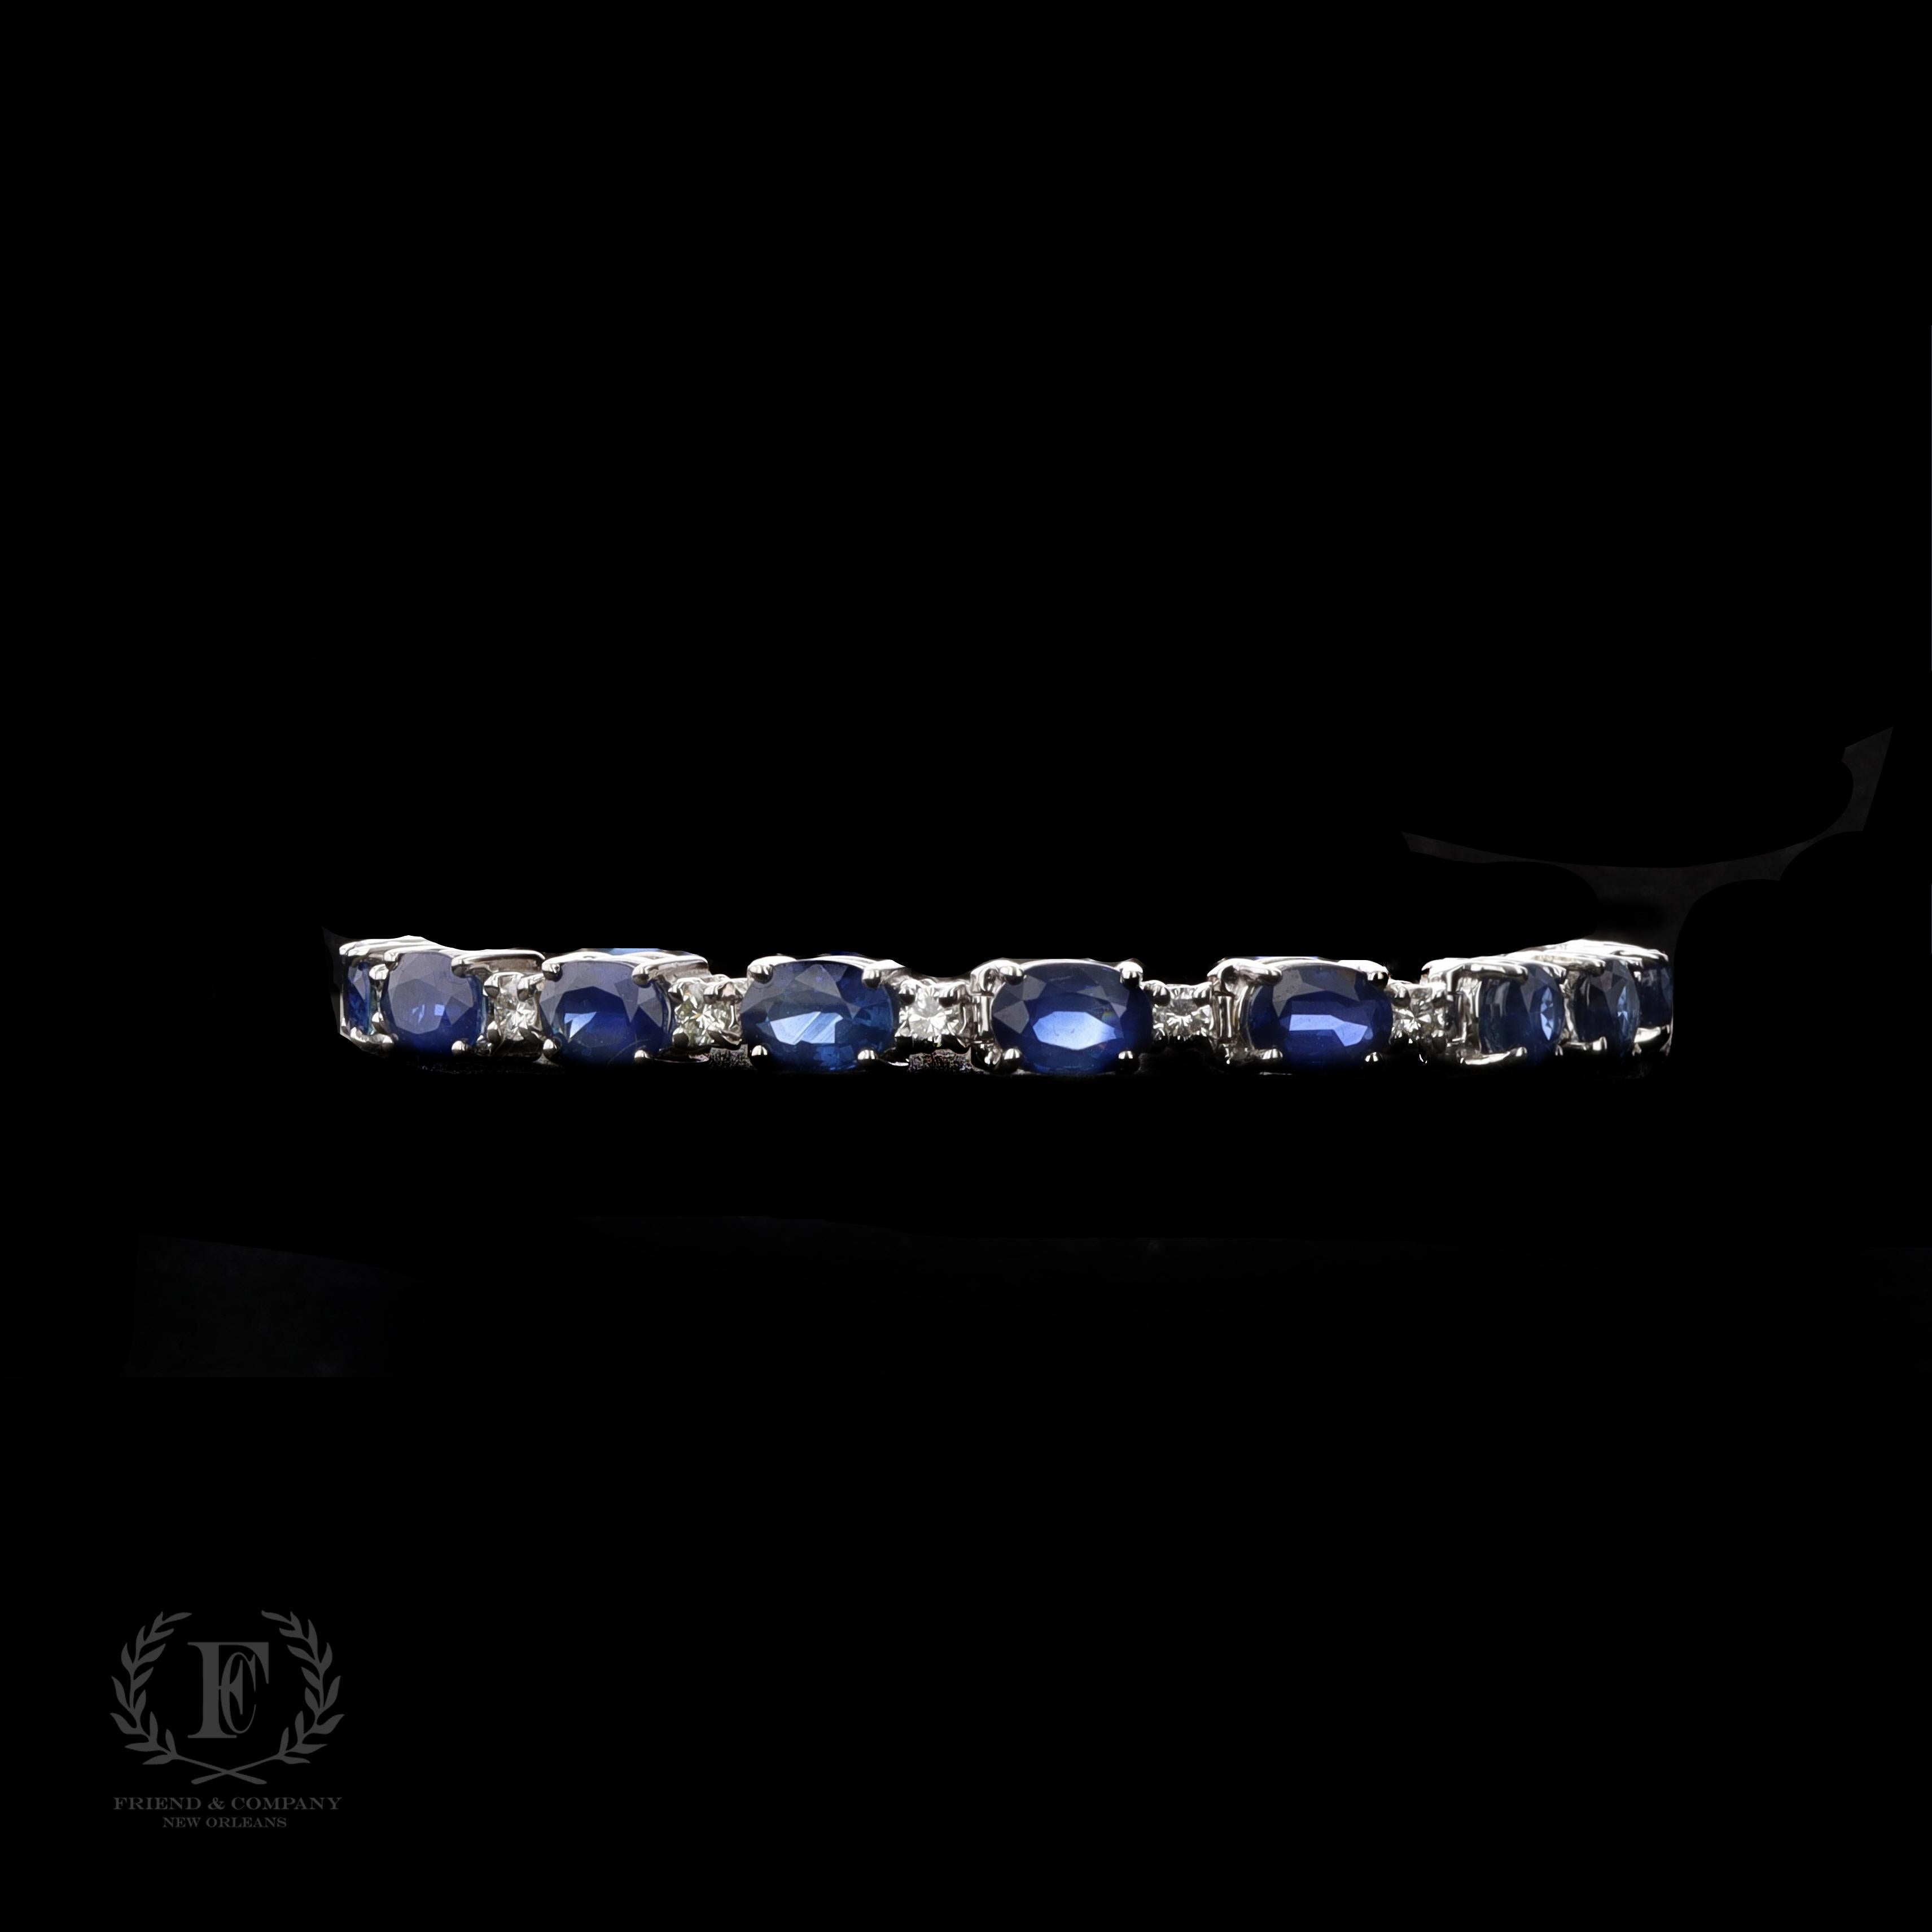 Ce magnifique bracelet en saphir et diamant est une pièce à chérir toute une vie. Il est réalisé en or blanc 14 carats et comporte 17 saphirs bleus de taille ovale d'un poids total de 14,28 carats. Le bracelet contient également 18 diamants ronds